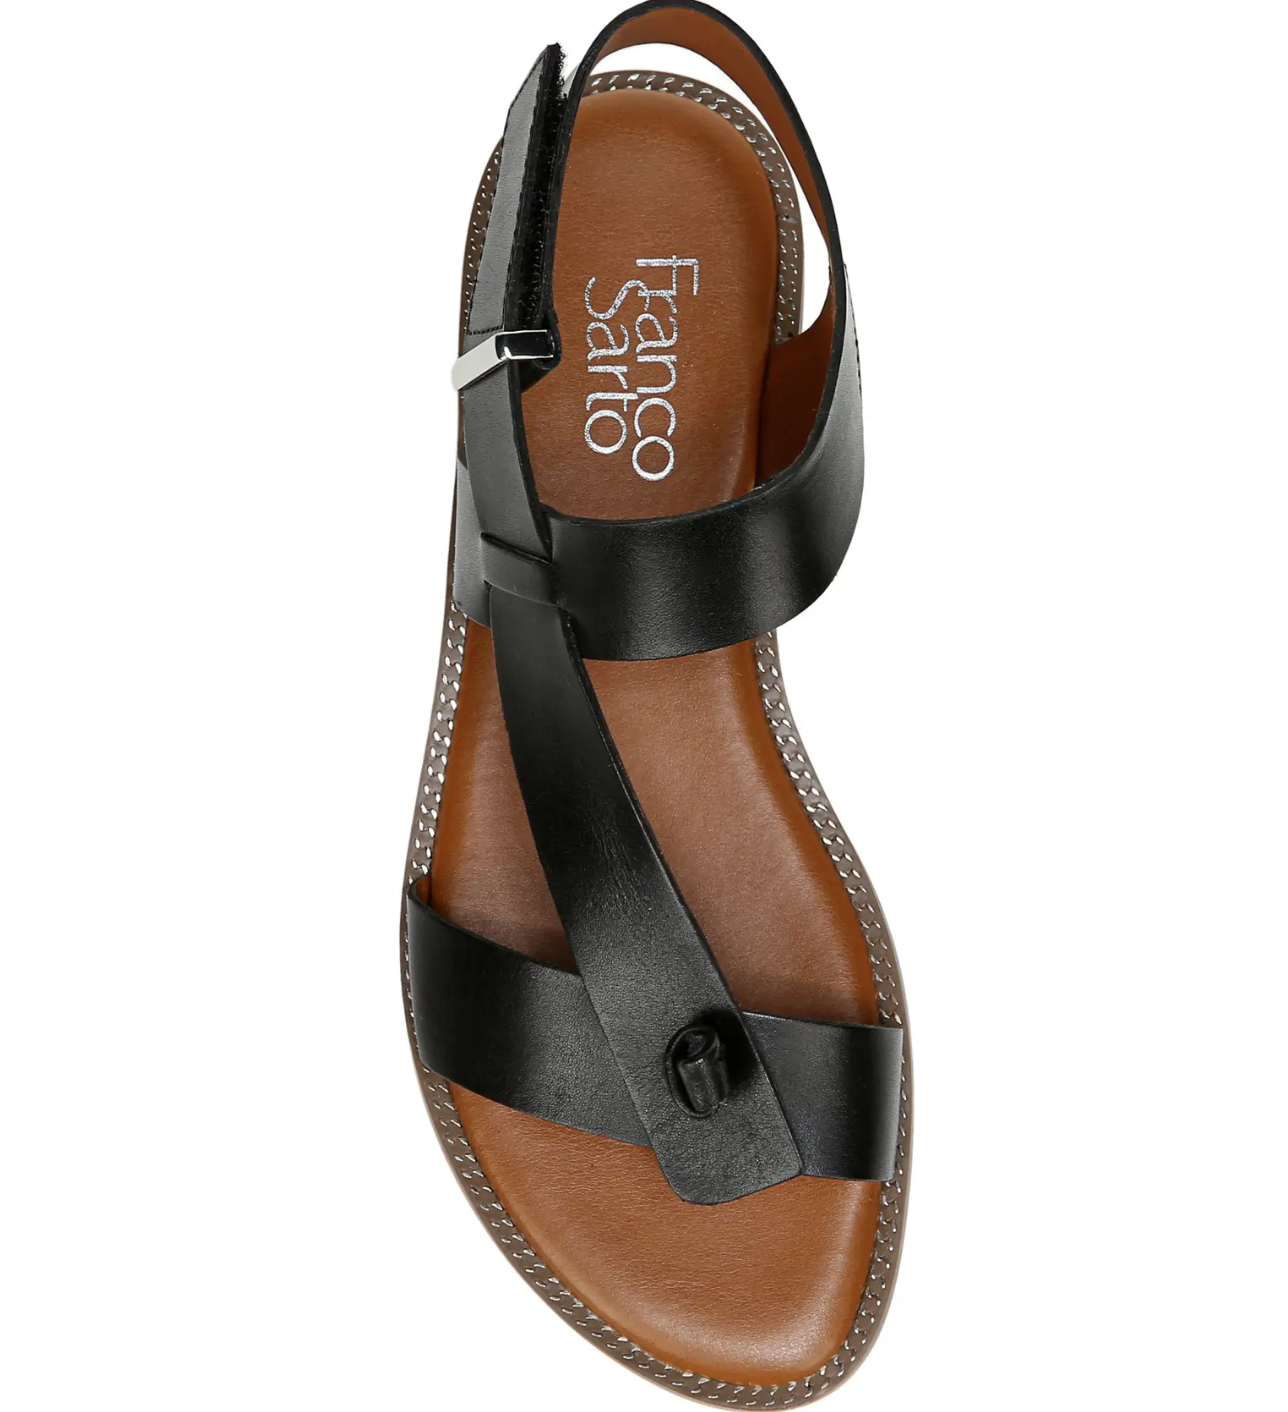 Buy Women Black Casual Sandals Online - 779967 | Allen Solly